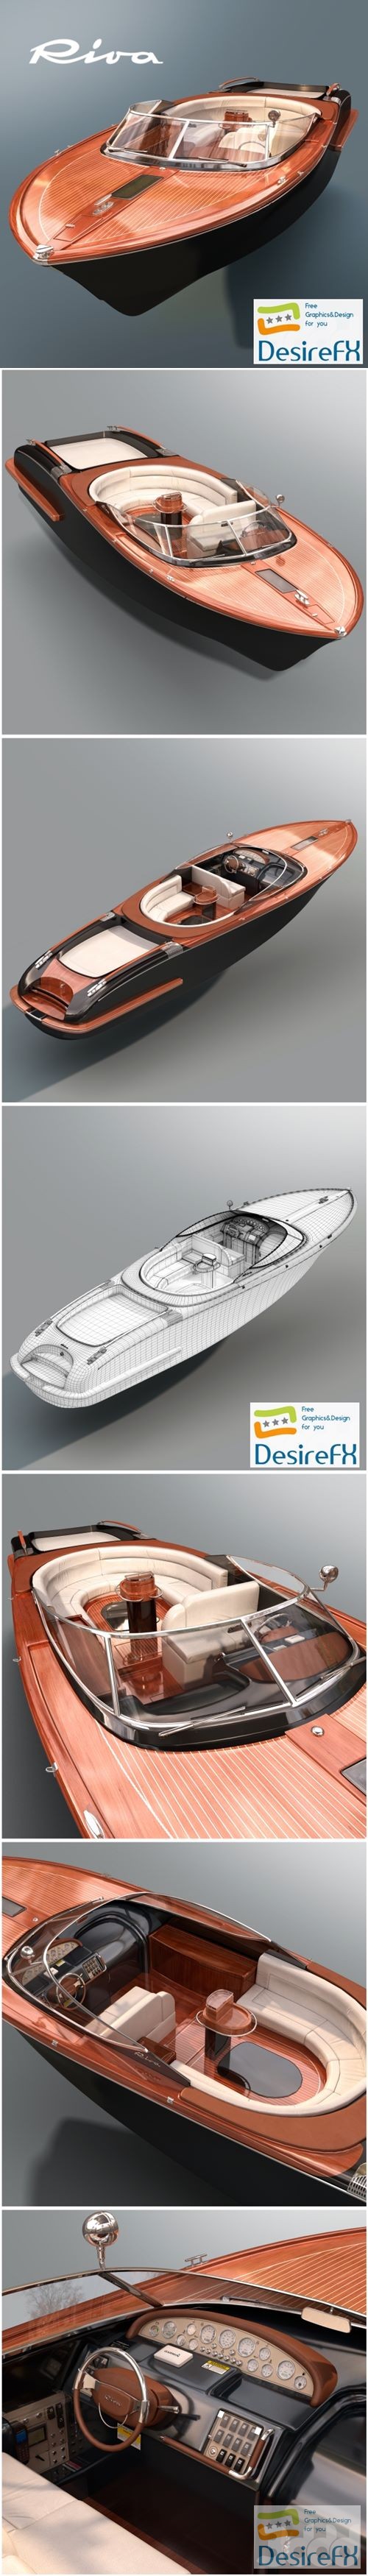 Riva Aquariva Super Boat 3D Model